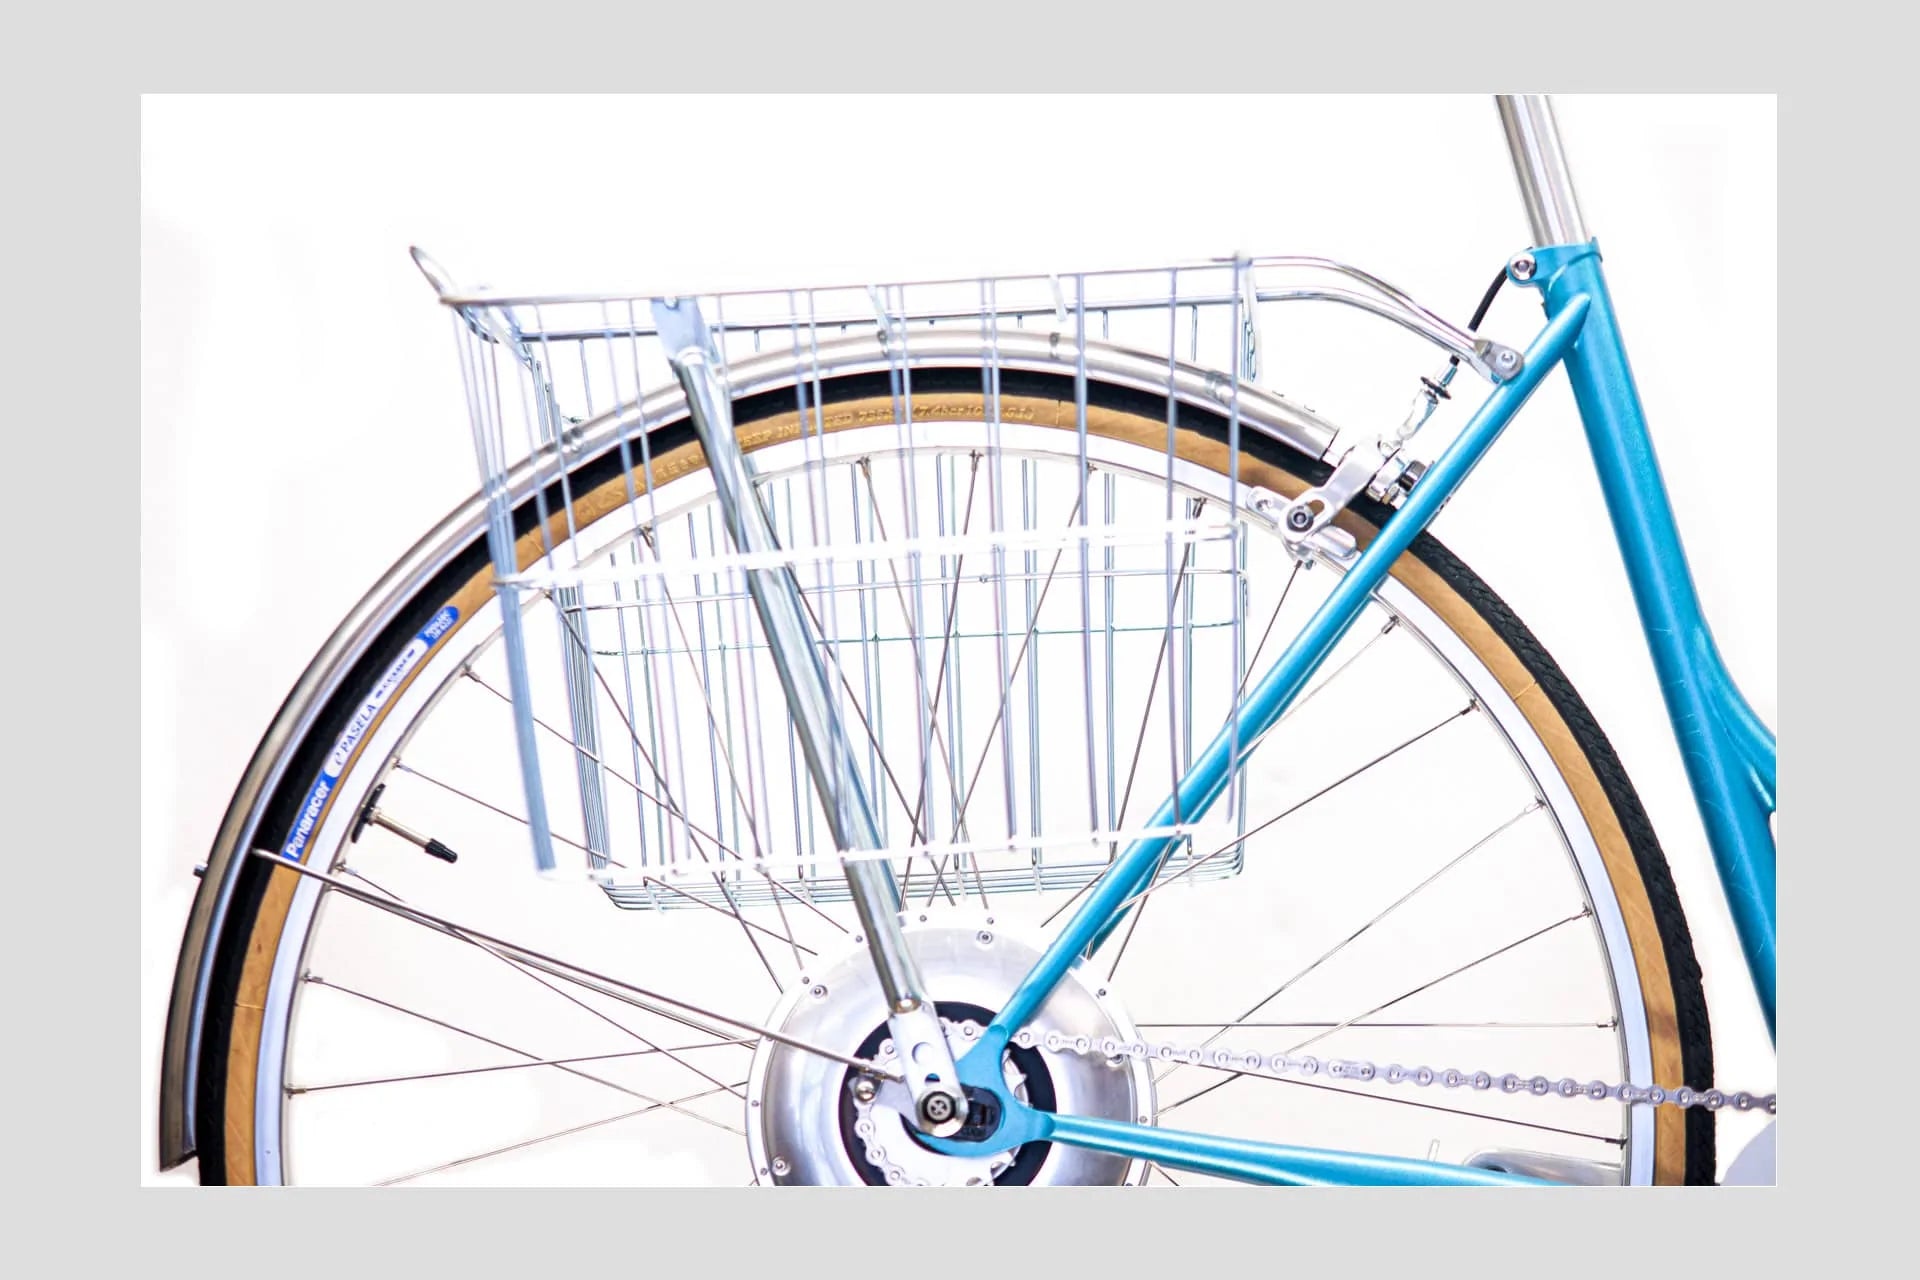 LADY - Electric - 2gear - MLM87 - GOrilla . urban cycling